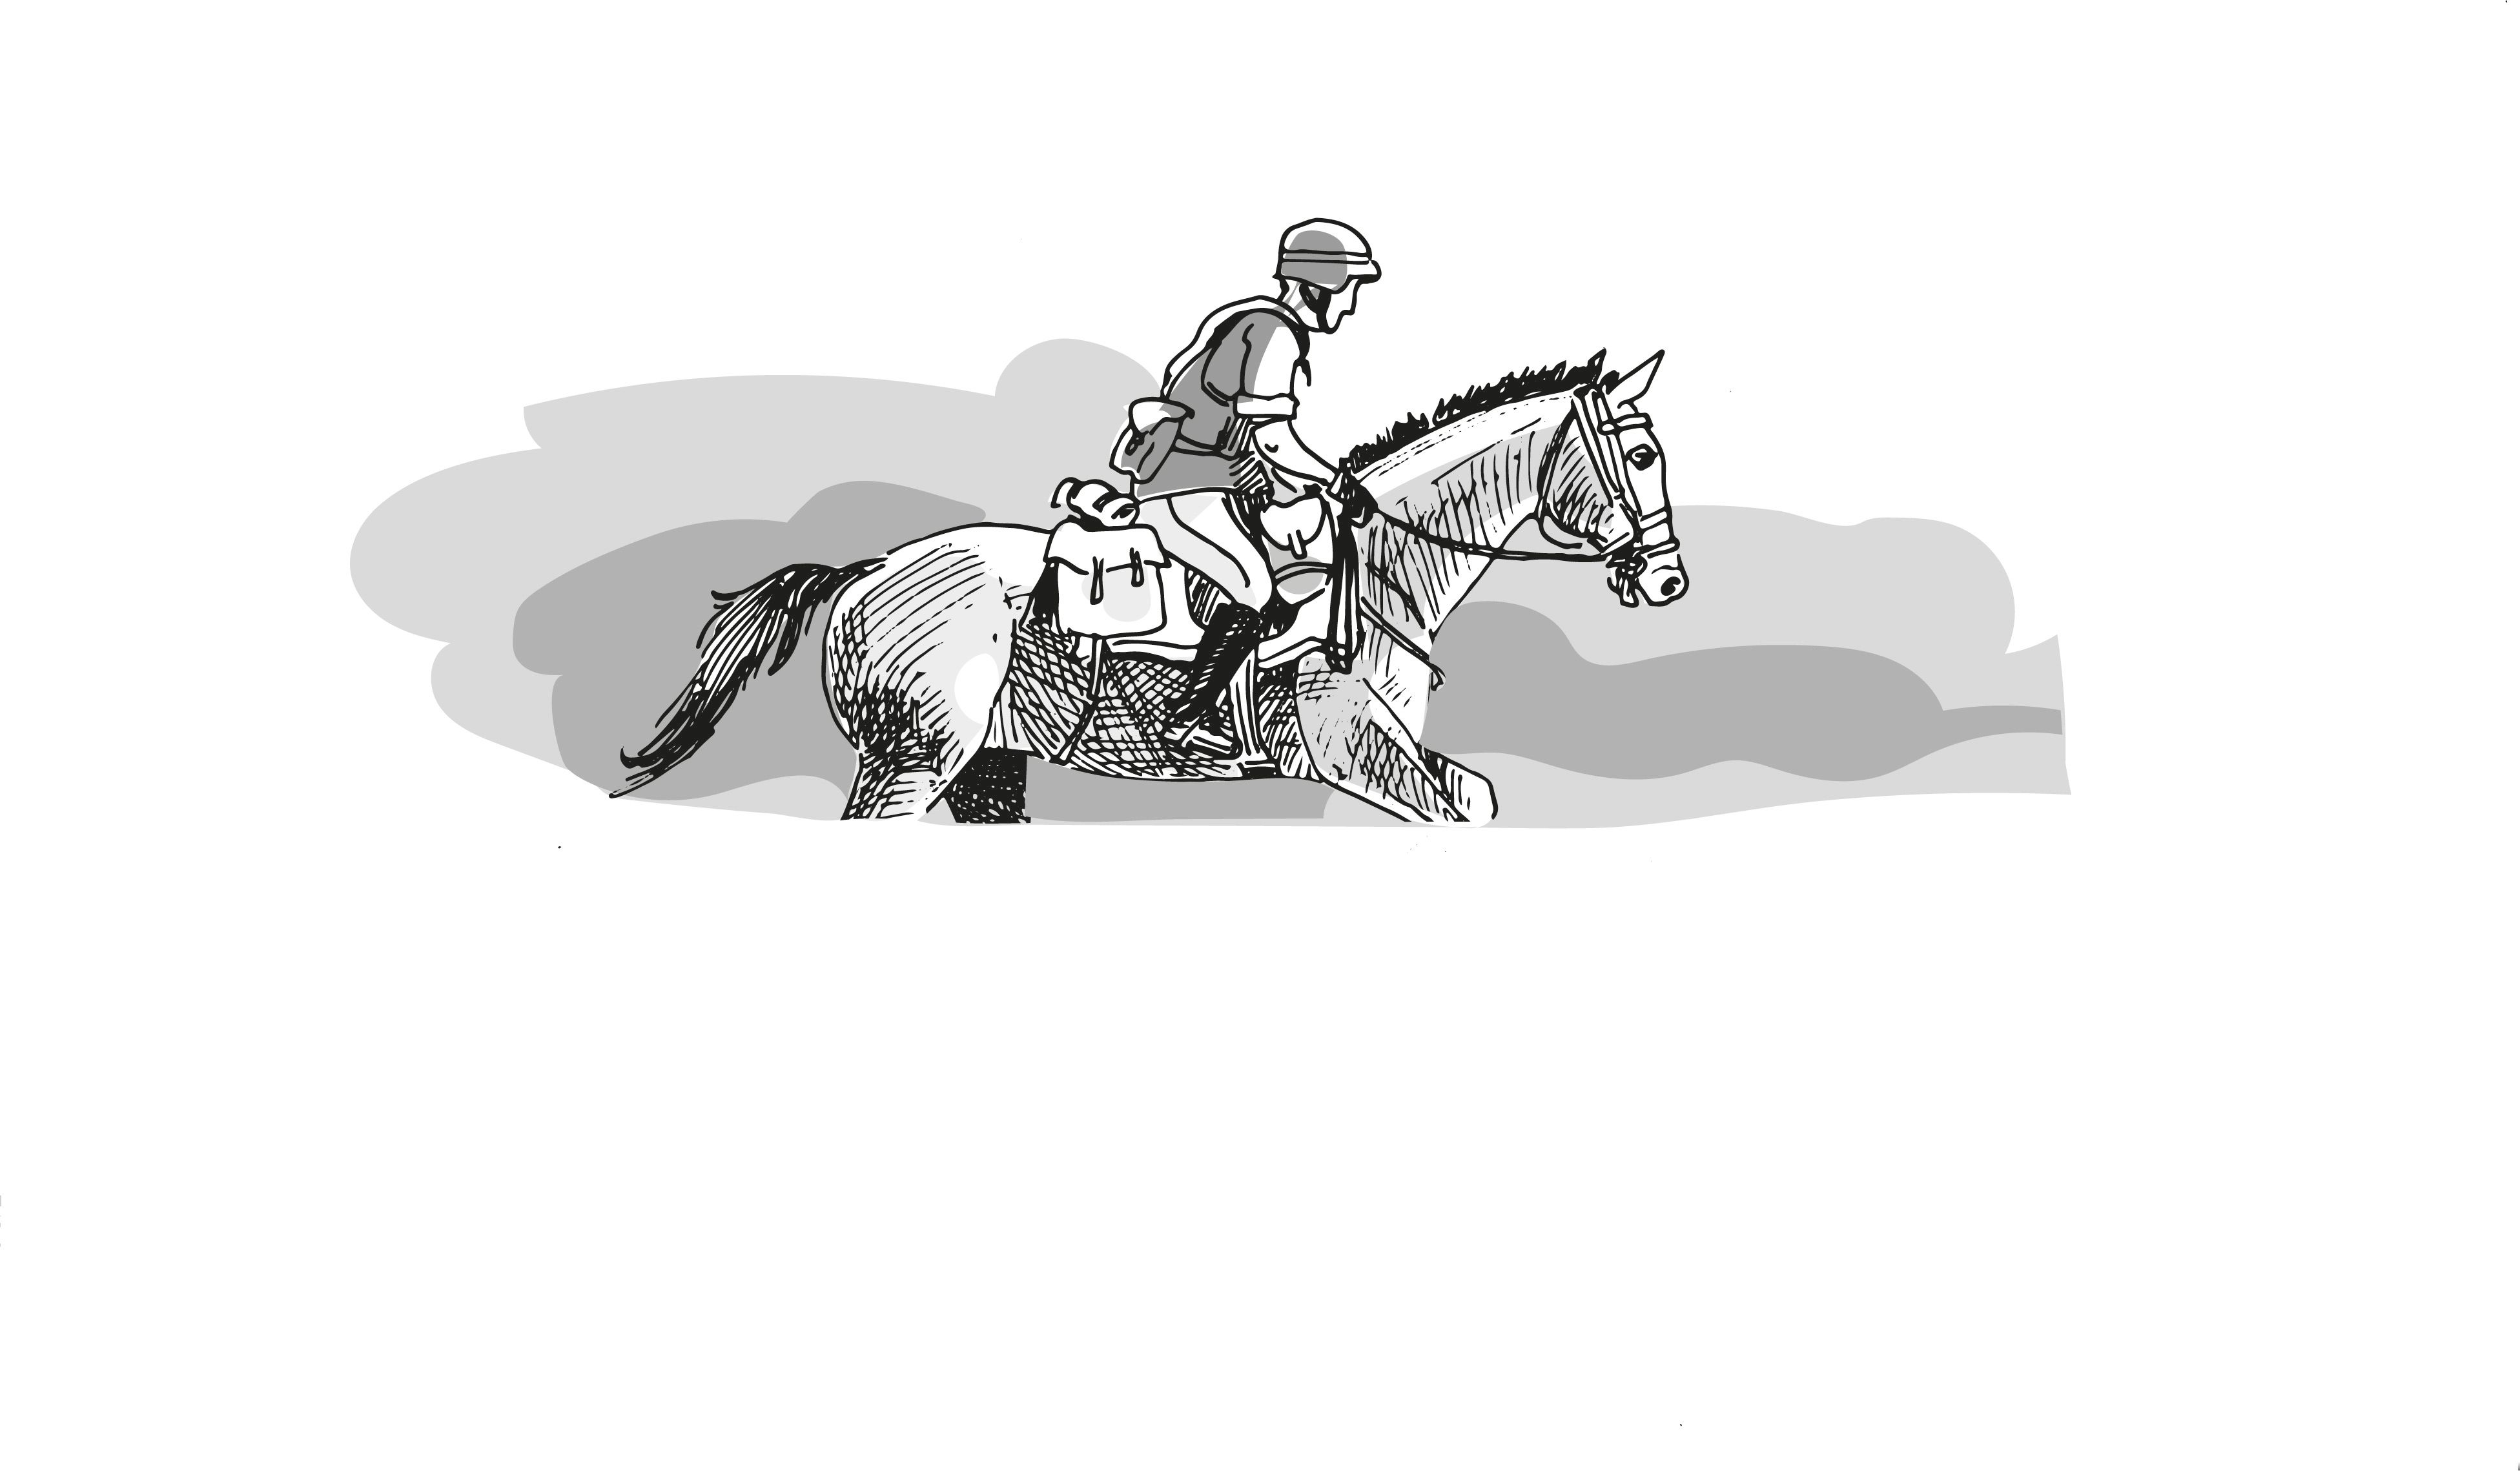 L'illustration en noir et blanc montre un cavalier de patrouille, qui a été dessiné par l'artiste Henry Althaus.